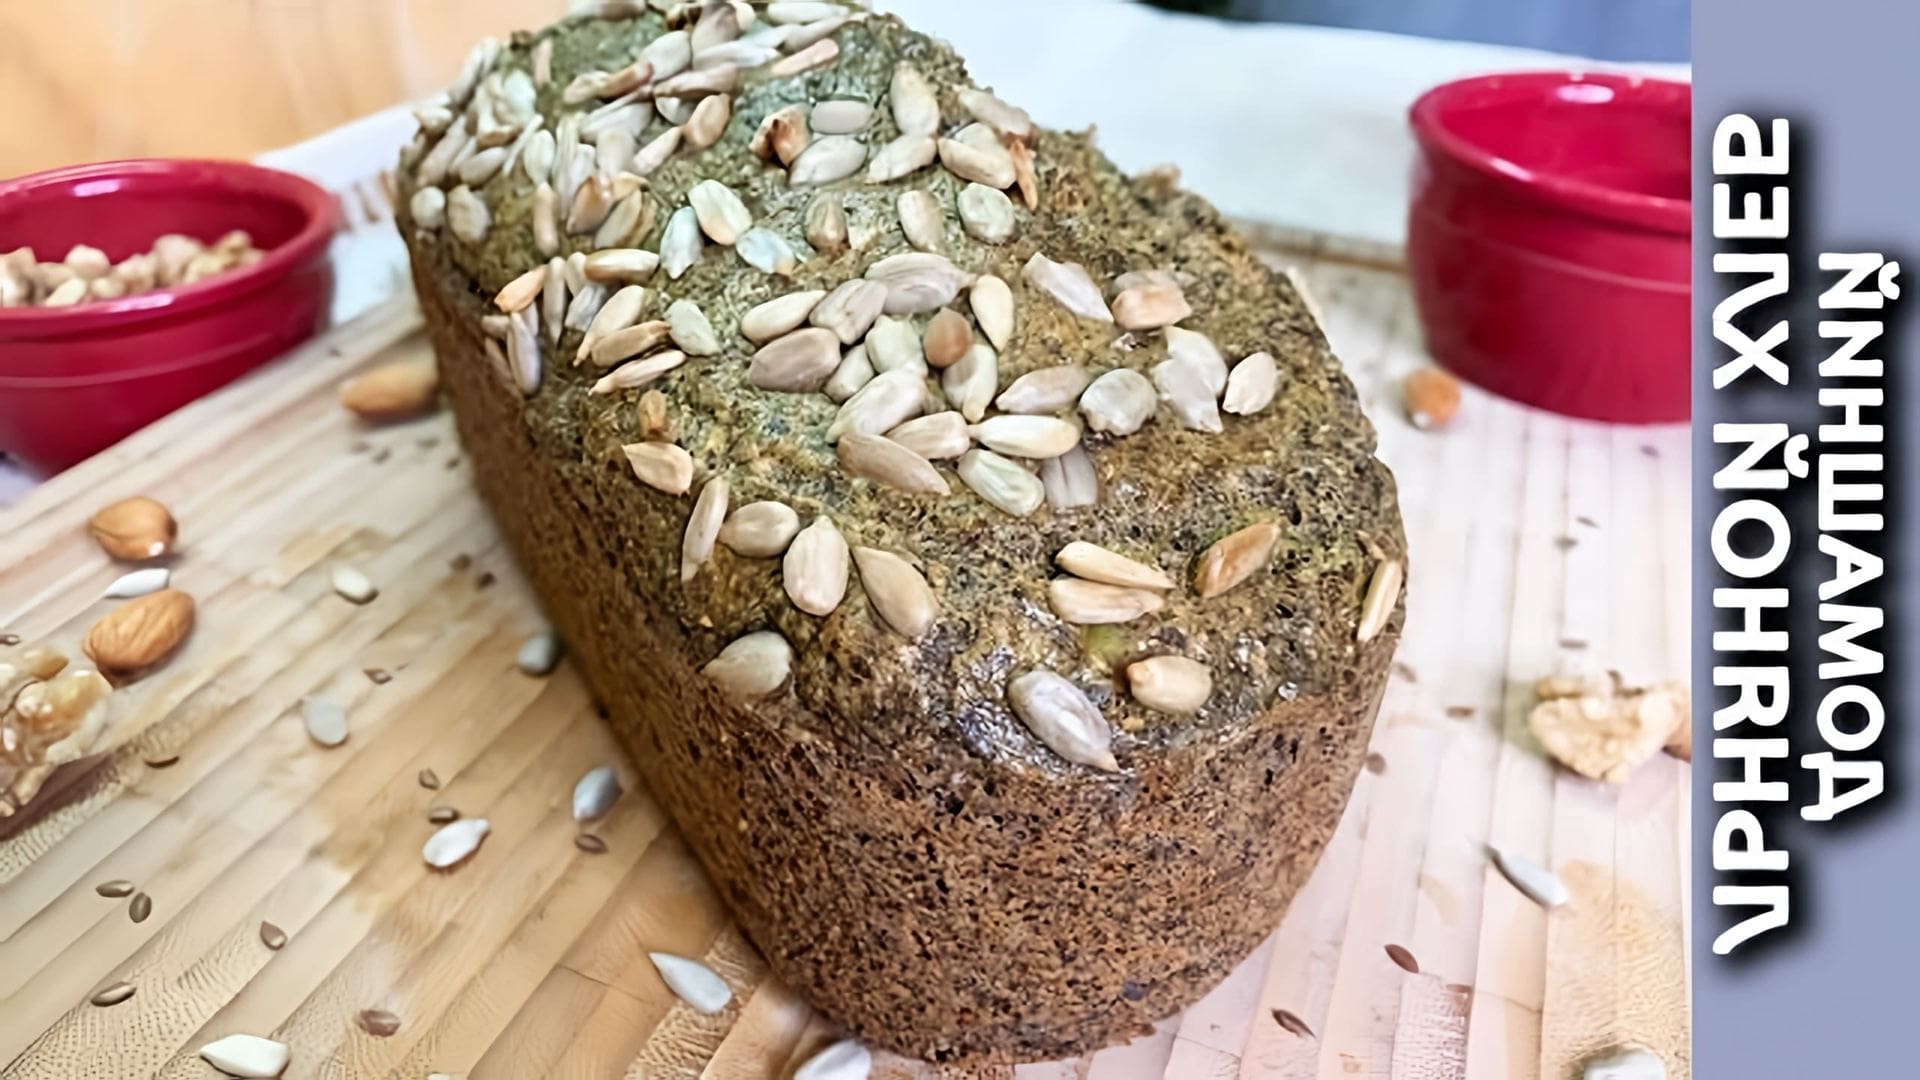 В этом видео демонстрируется рецепт домашнего хлеба из семян льна